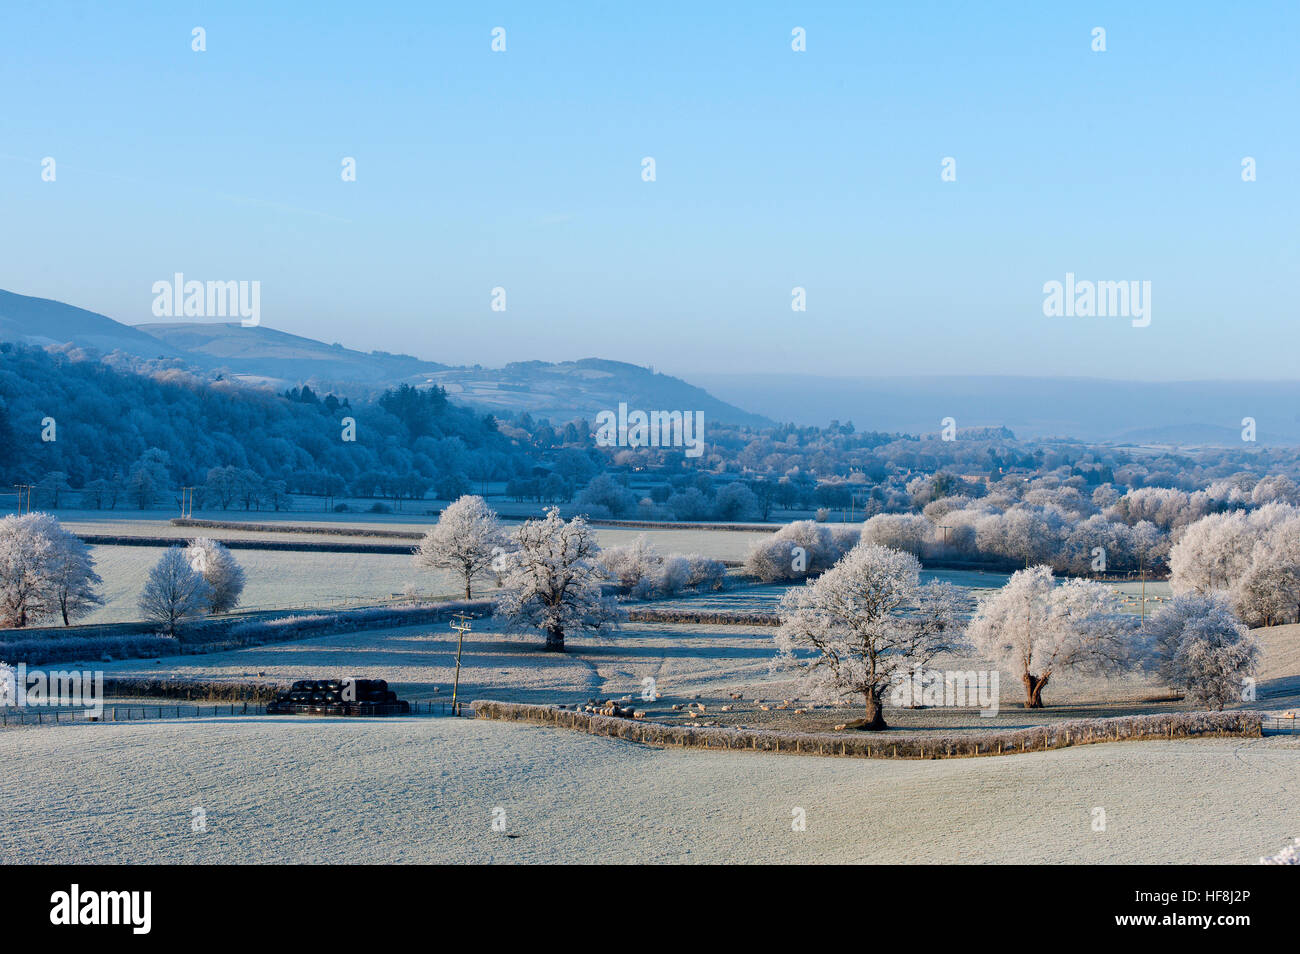 Powys, Wales, Regno Unito. Il 29 dicembre 2016. Molto freddo e gelido nel Galles centrale allo spuntar del giorno con temperature scenda a circa meno 5 gradi centigradi la scorsa notte. © Graham M. Lawrence/Alamy Live News. Foto Stock